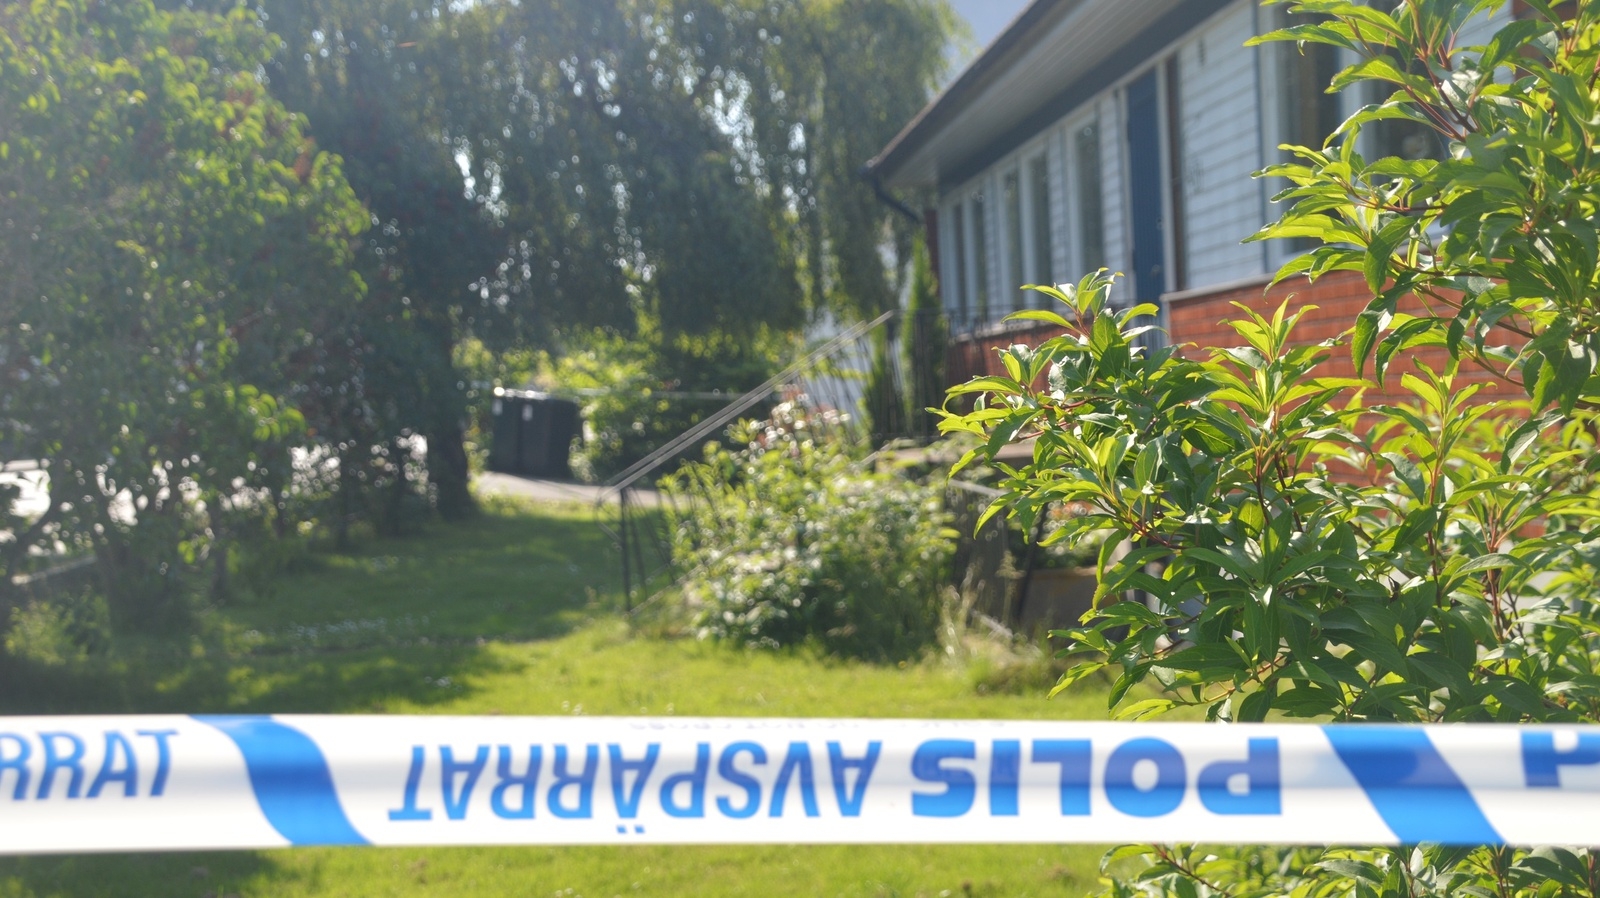 Polisen har spärrat av ett hus i centrala Hästveda.